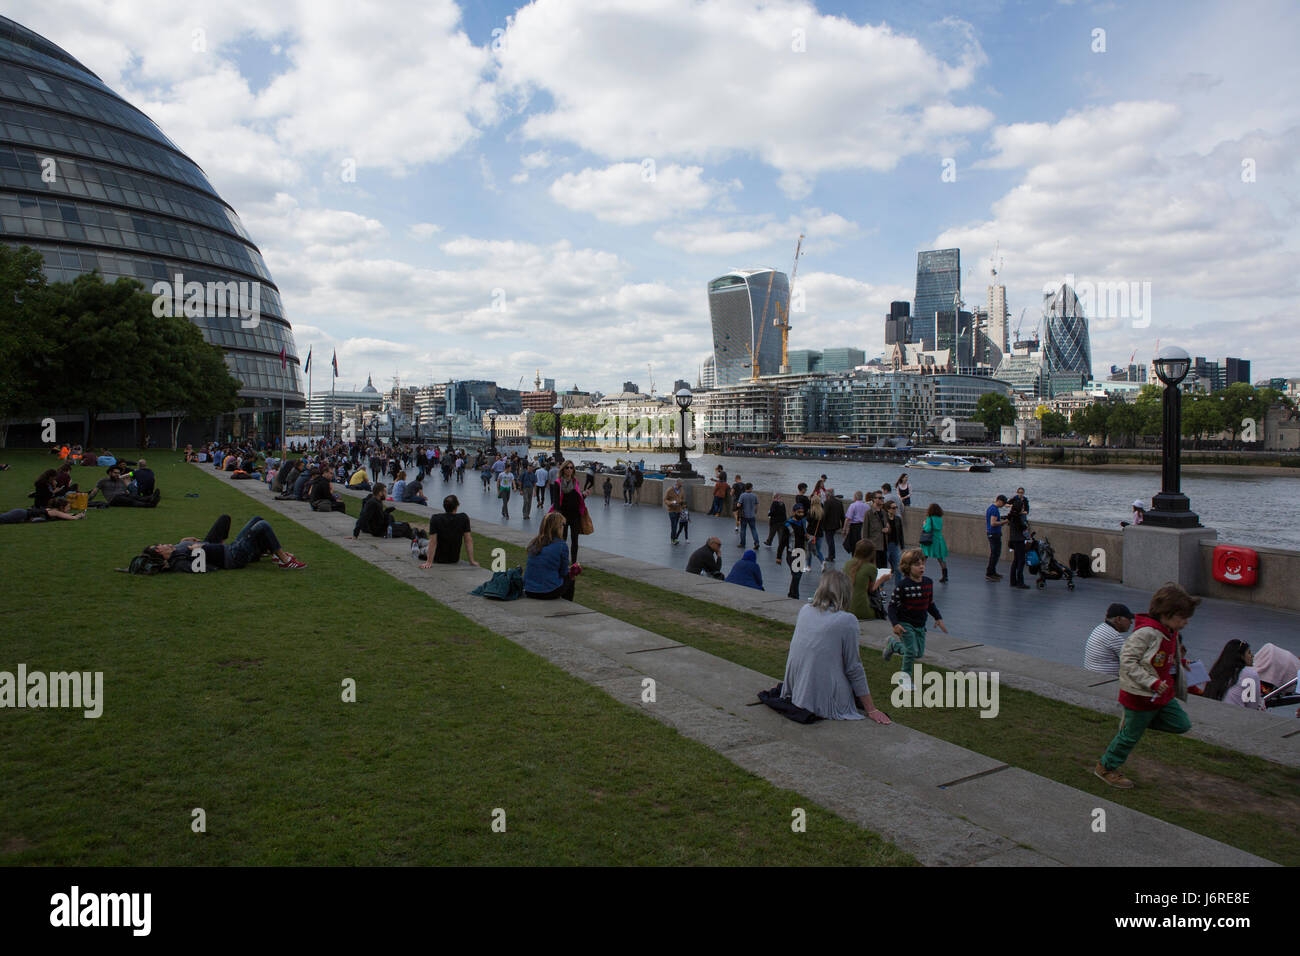 Les touristes se détendre dans les champs de potiers parc en face de Tower Bridge, Londres, Angleterre, Royaume-Uni Banque D'Images